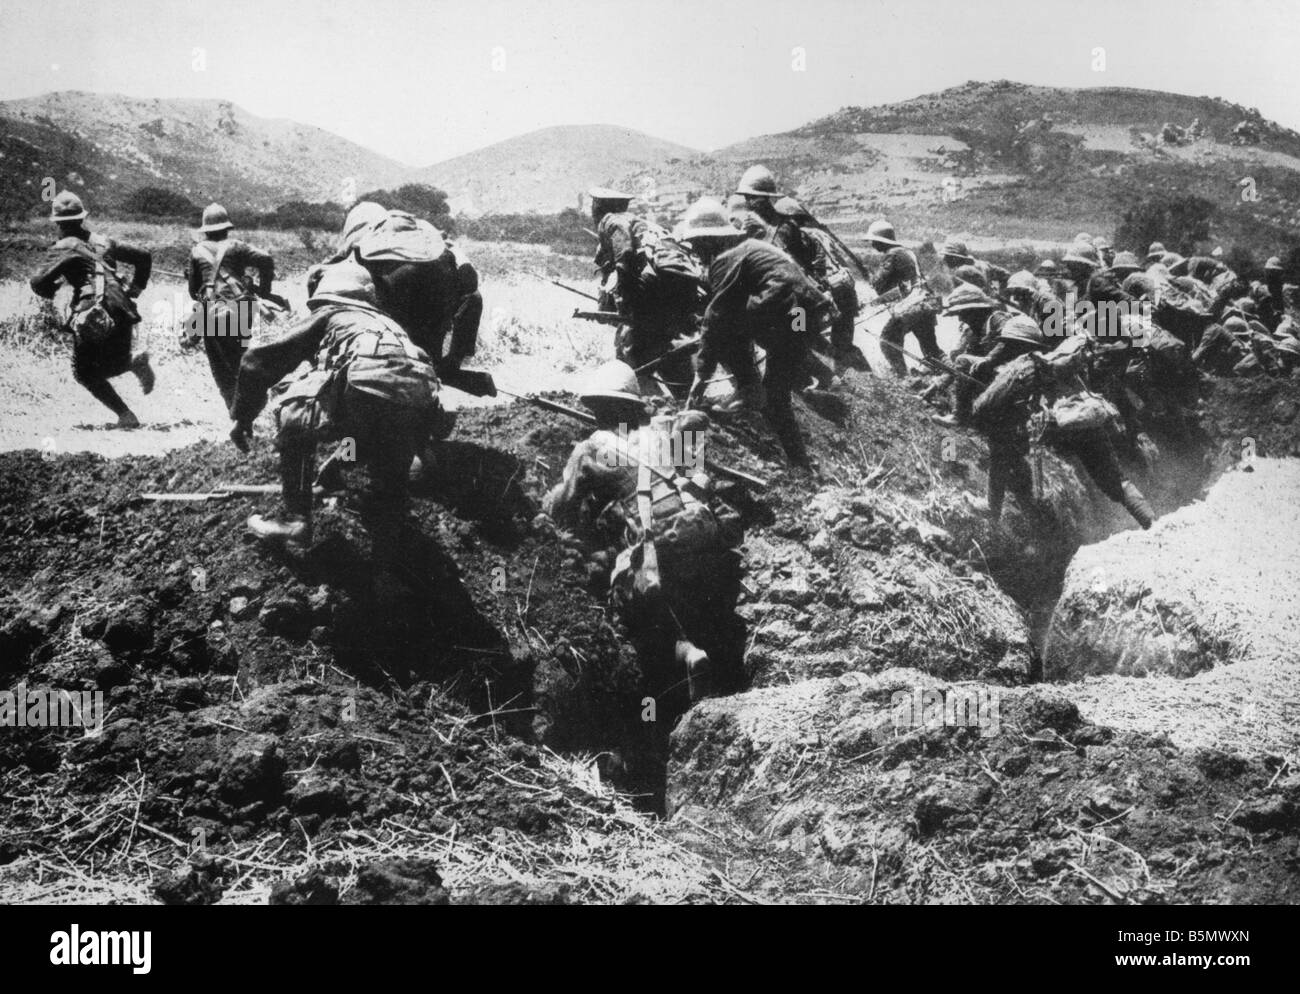 9TK 1915 4 25 A1 1 Batalla de Gallipoli 1915 Foto Guerra mundial una guerra en Oriente Próximo intento de desembarco aliado en el Dardanell Foto de stock